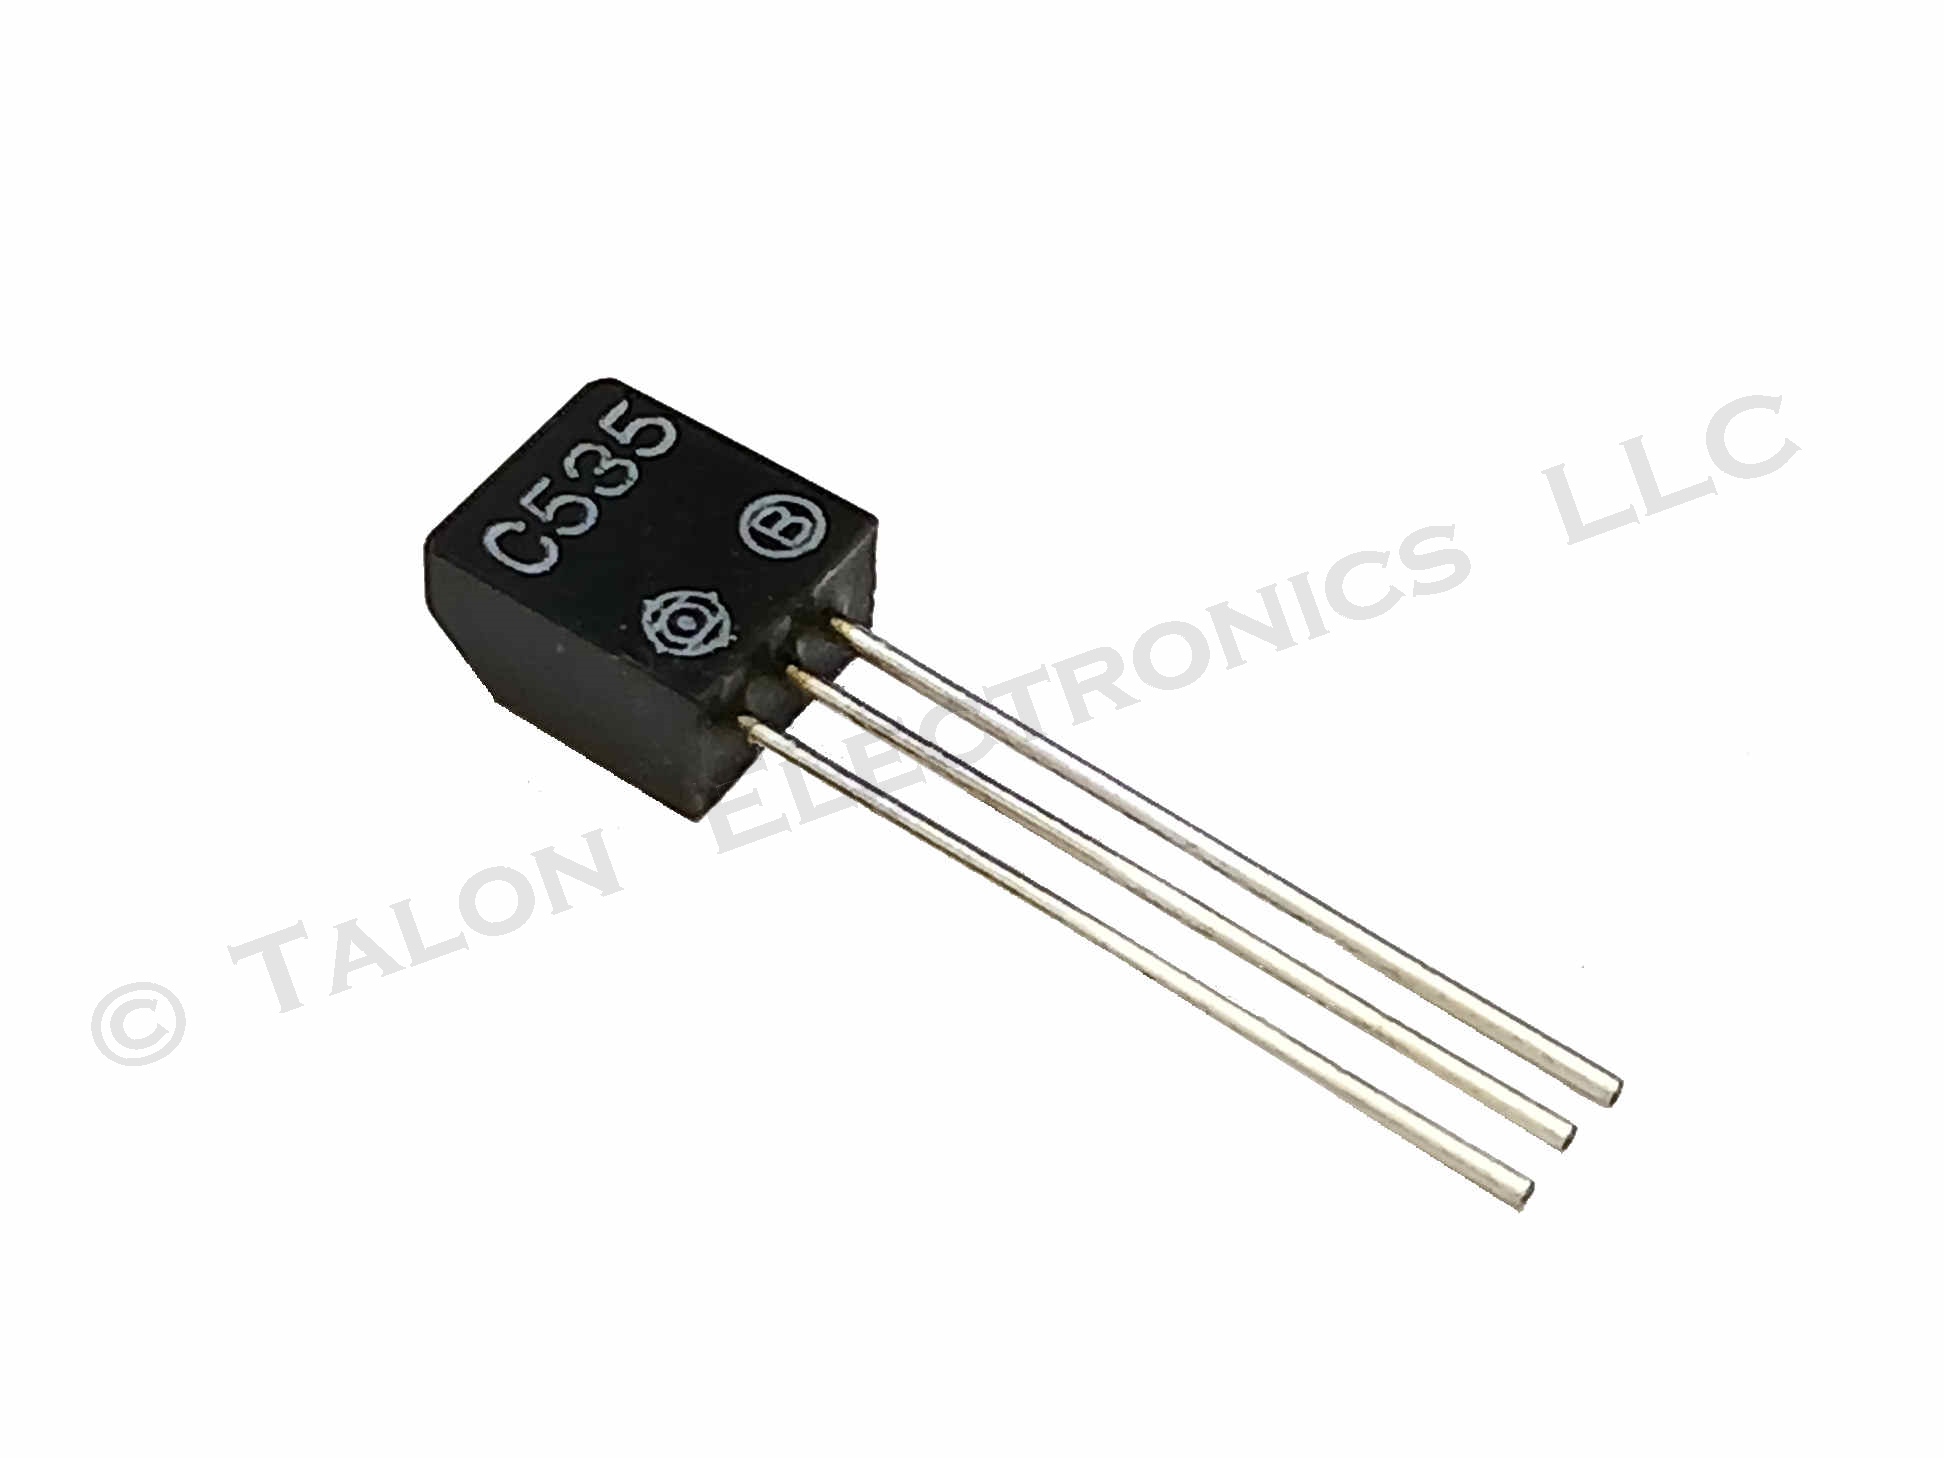  2SC535(B)  NPN Silicon Transistor